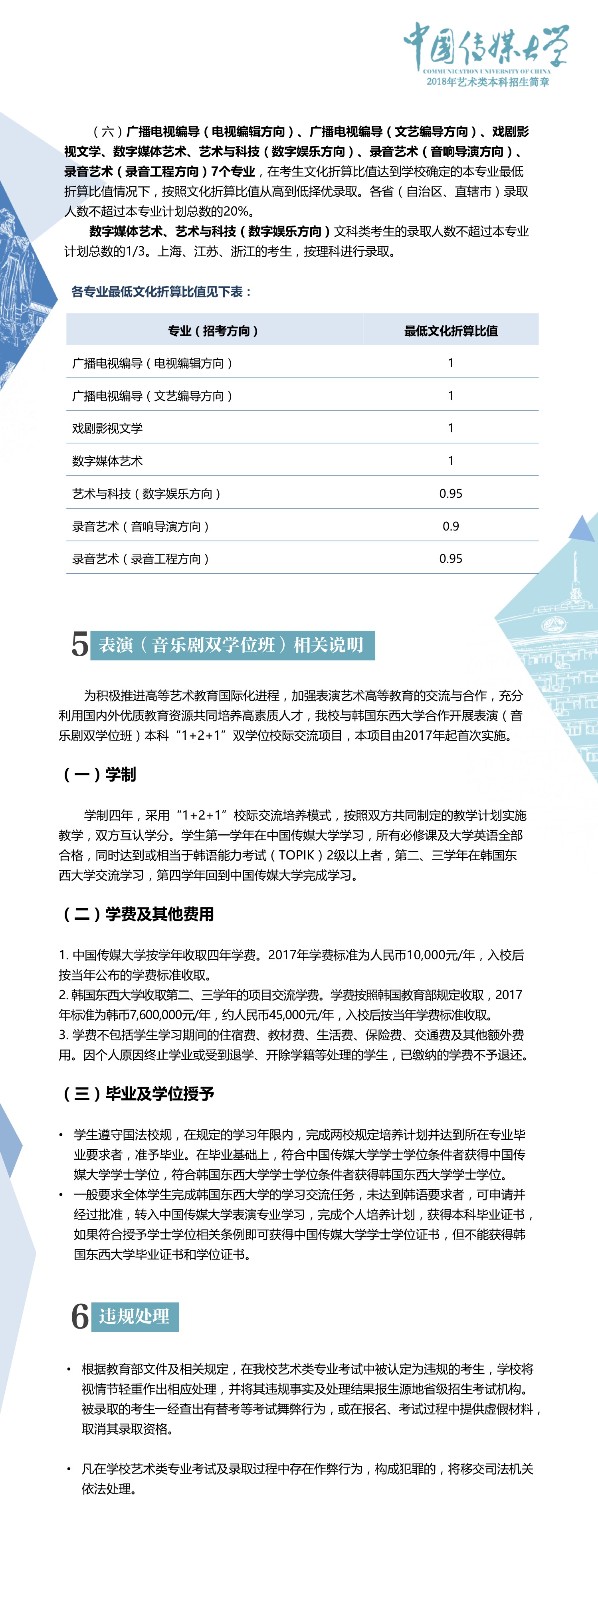 中国传媒大学-page6 12:26:2017.jpeg